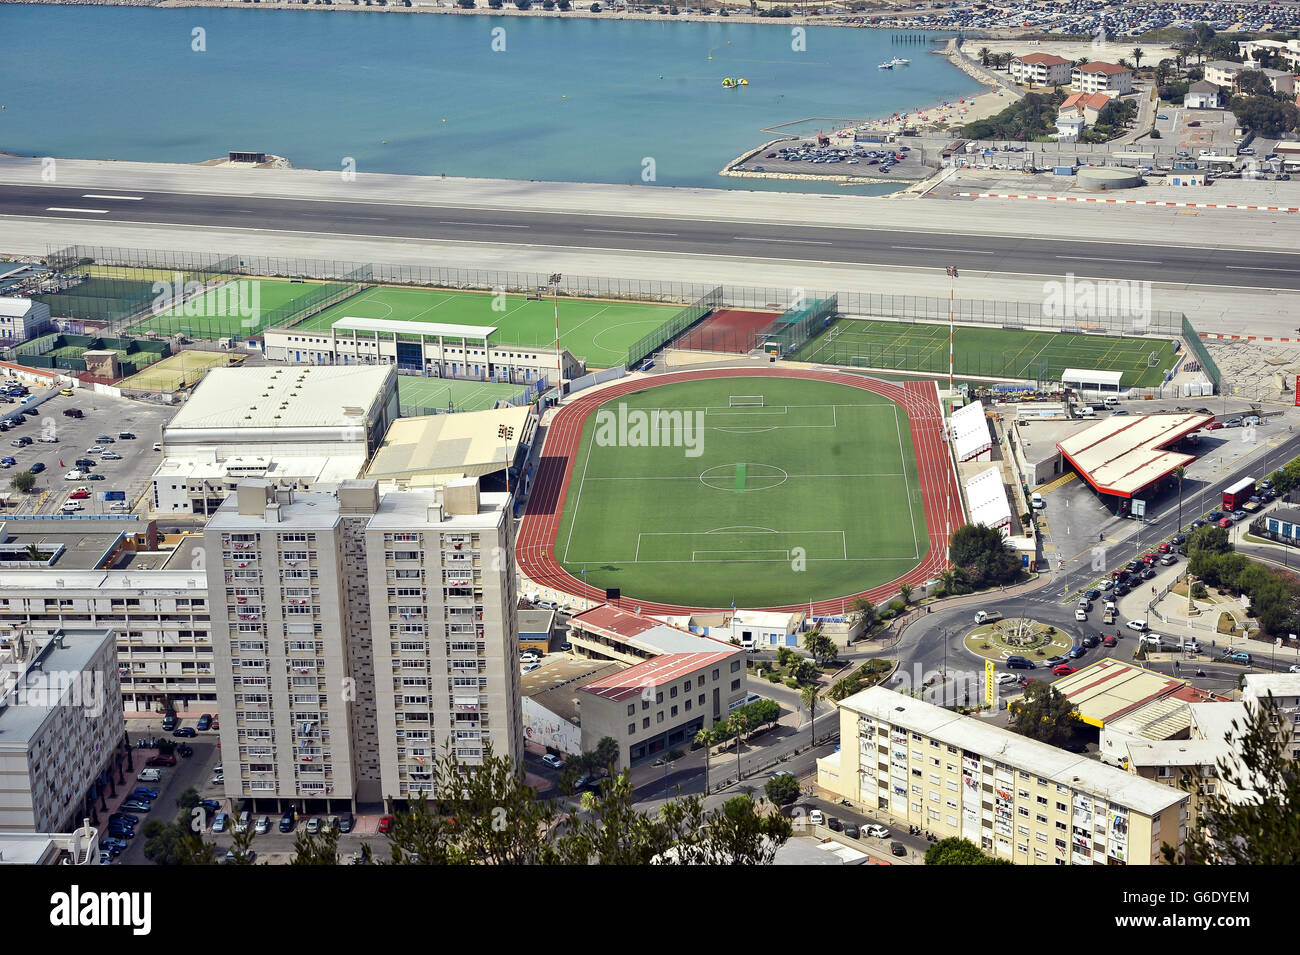 Ein allgemeiner Blick auf die Gibraltar Piste mit Fußballplätzen und Sportanlagen unten. Stockfoto